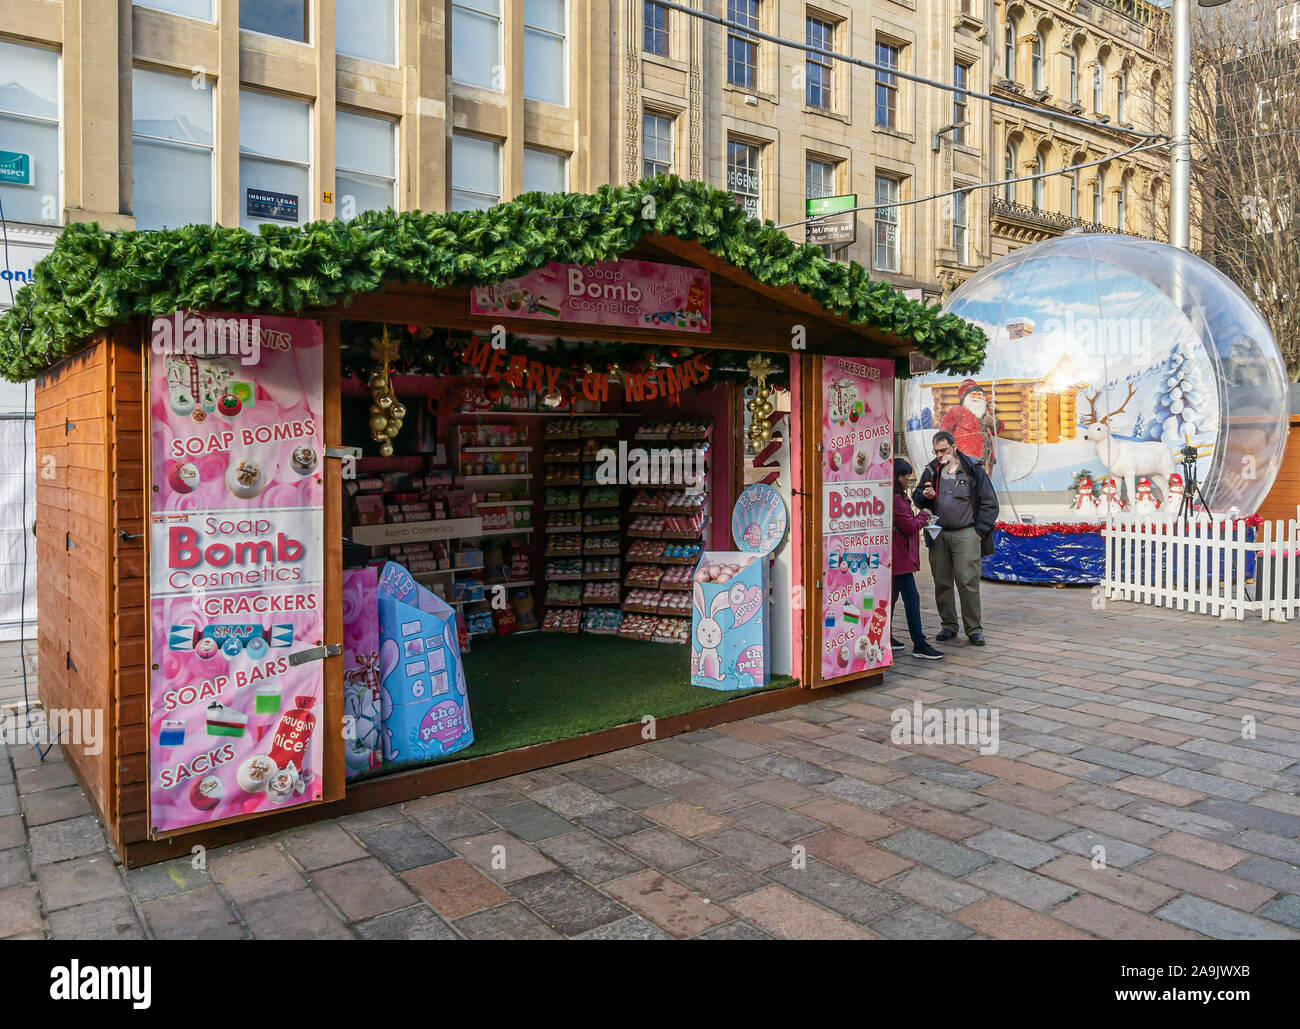 Marché de Noël 2019 de Glasgow à St Enoch square Glasgow Ecosse avec cabine de bombe Savon de beauté Banque D'Images